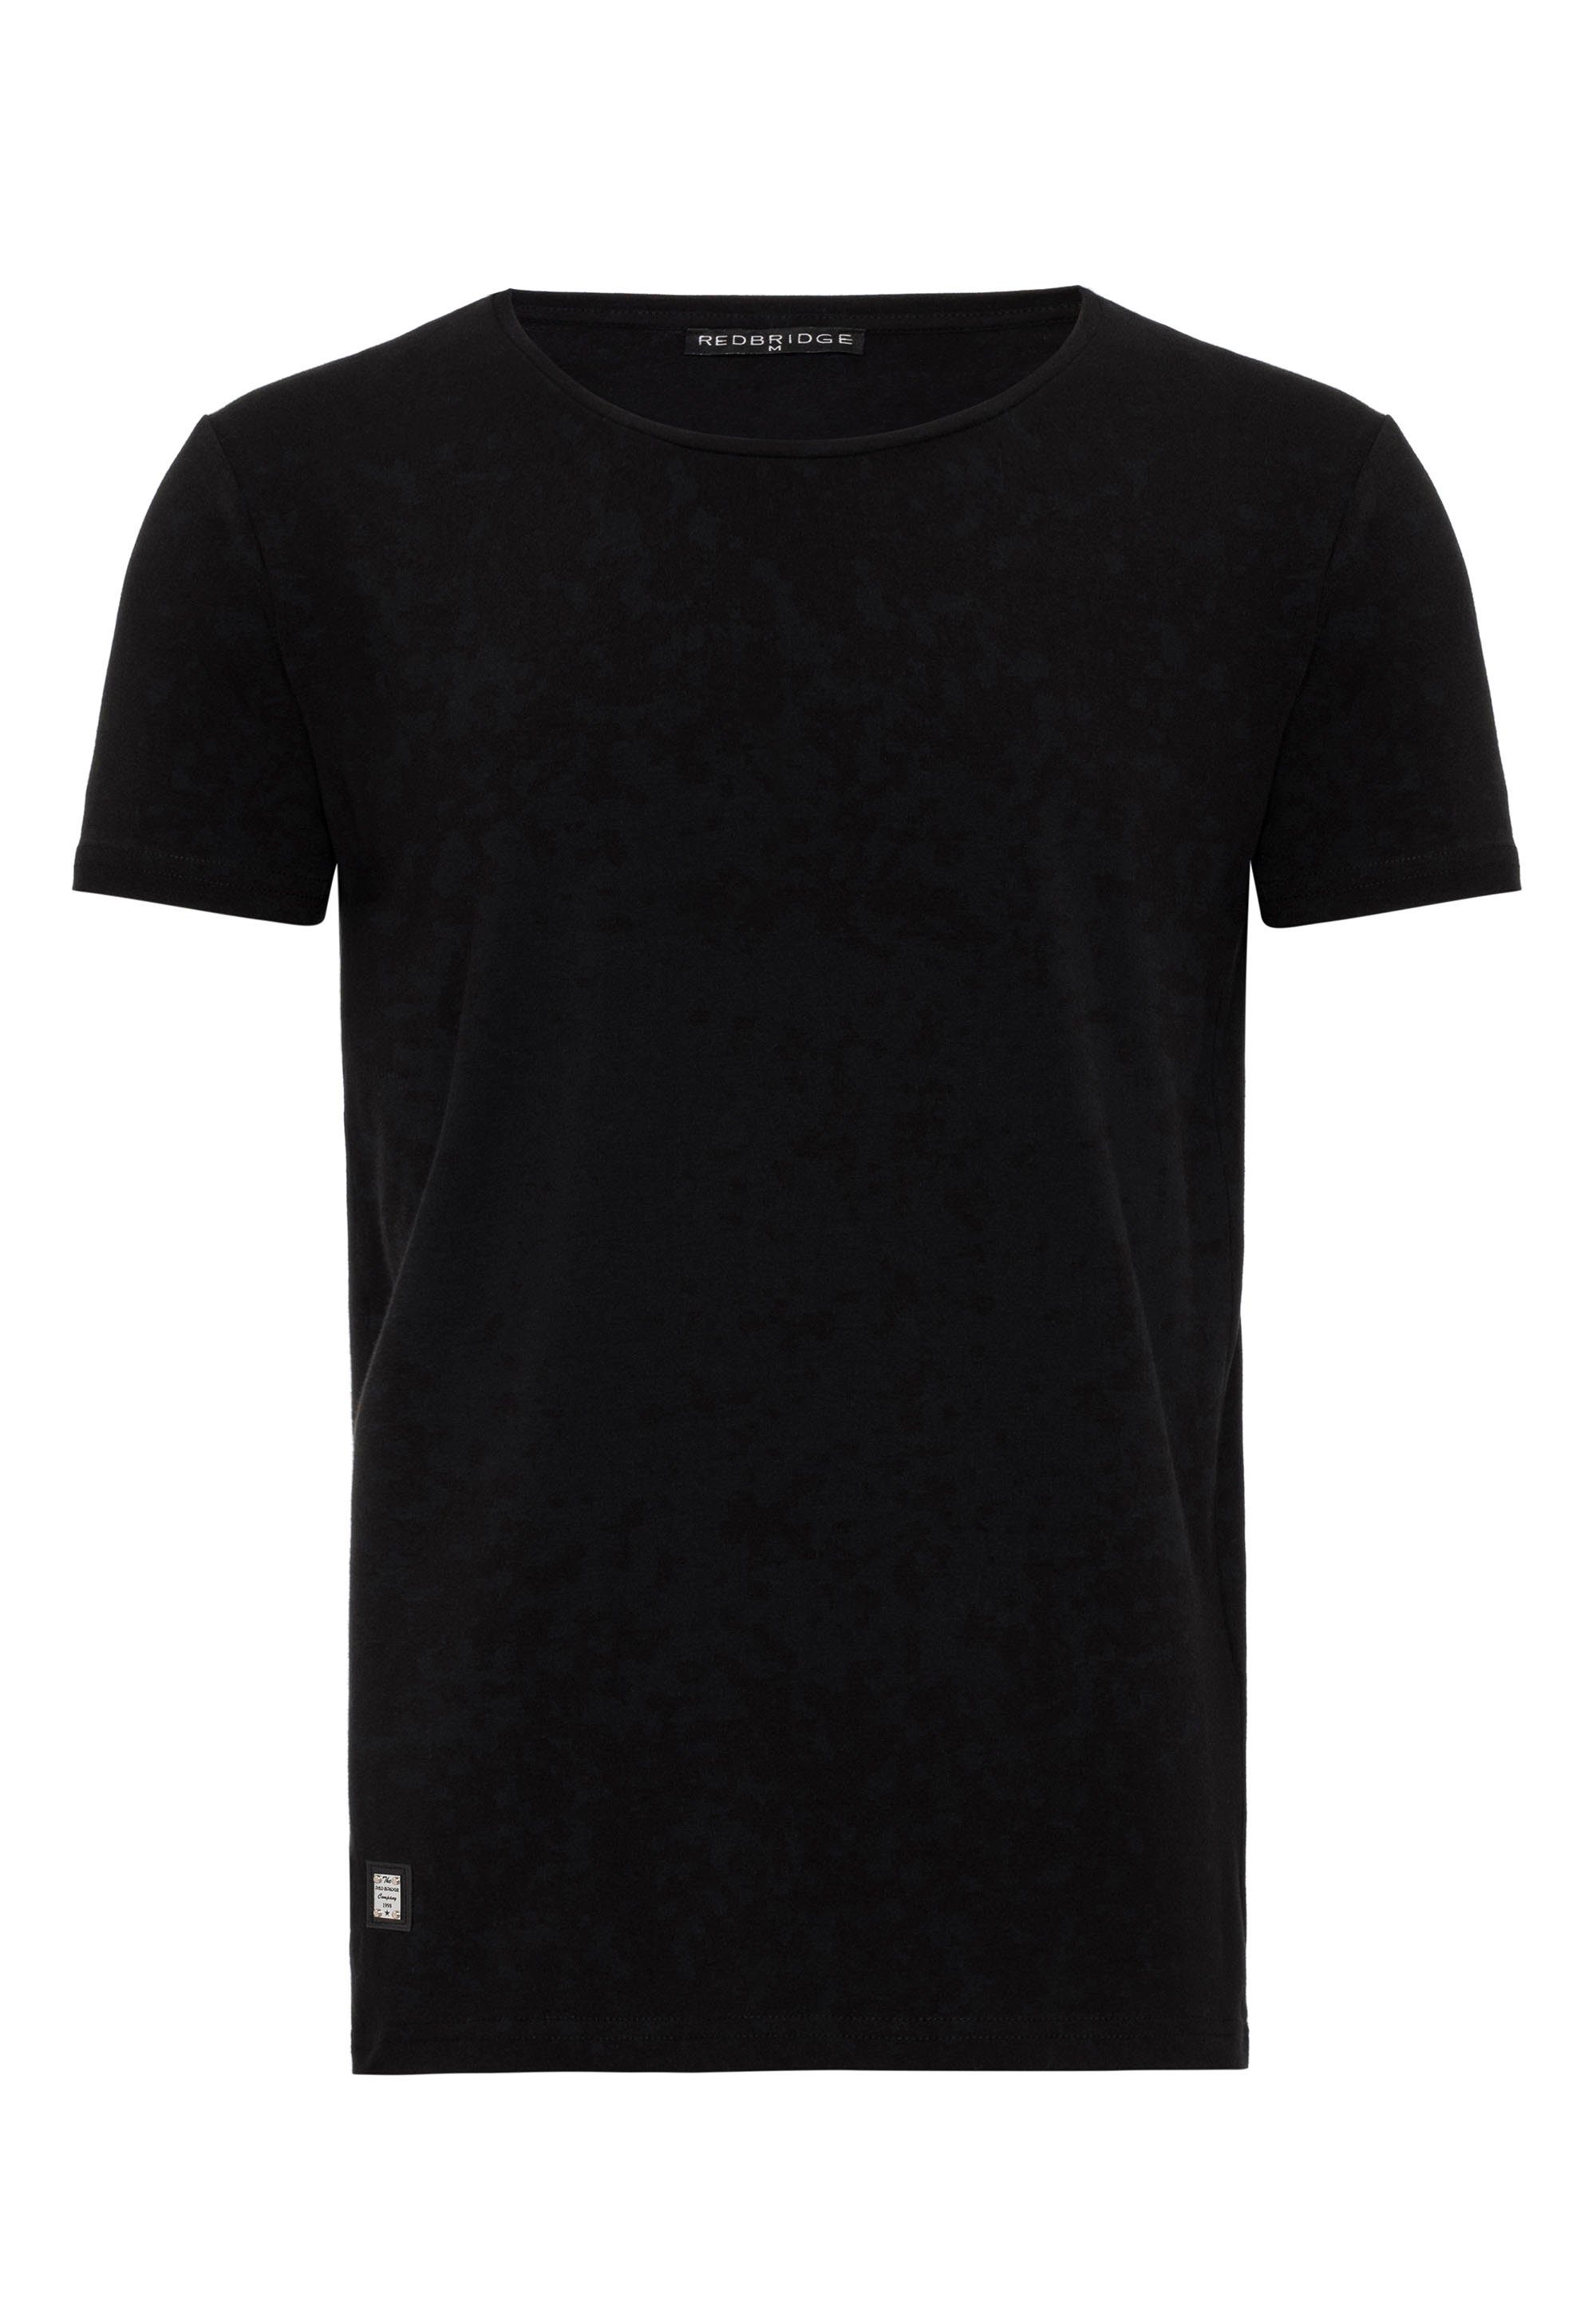 Logopatch Waco RedBridge dezentem schwarz T-Shirt mit